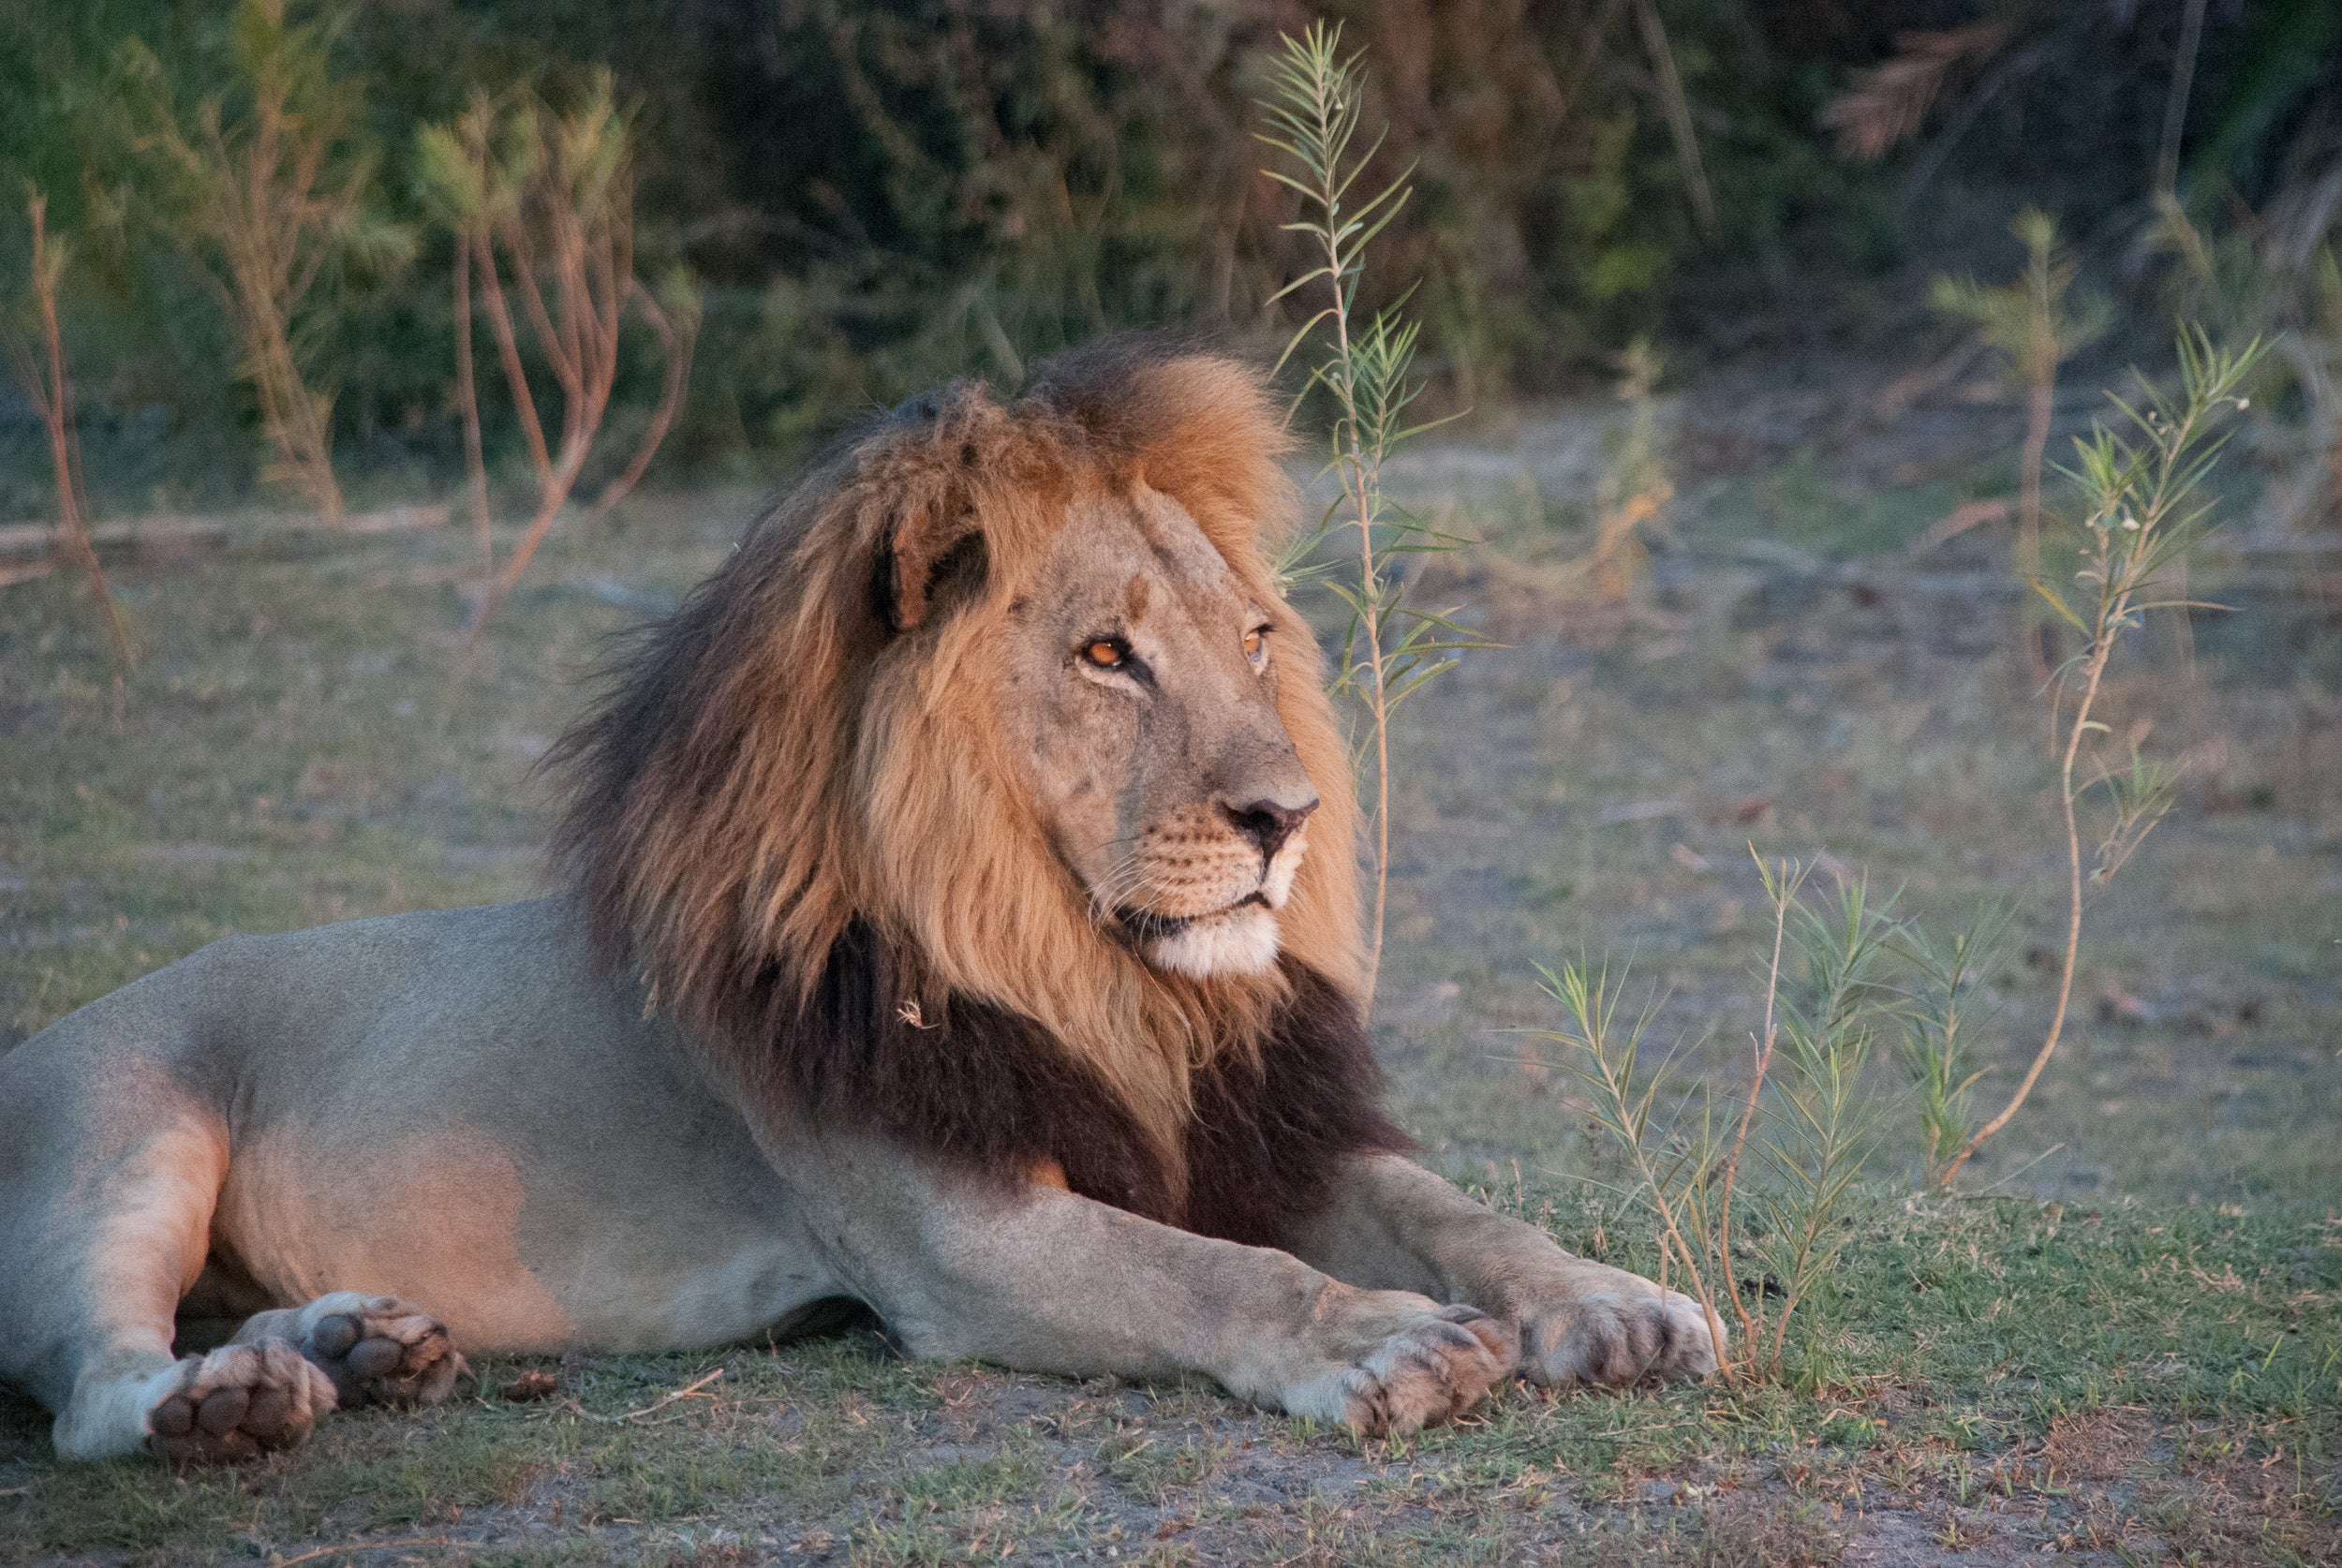 Lion on safari at sundown